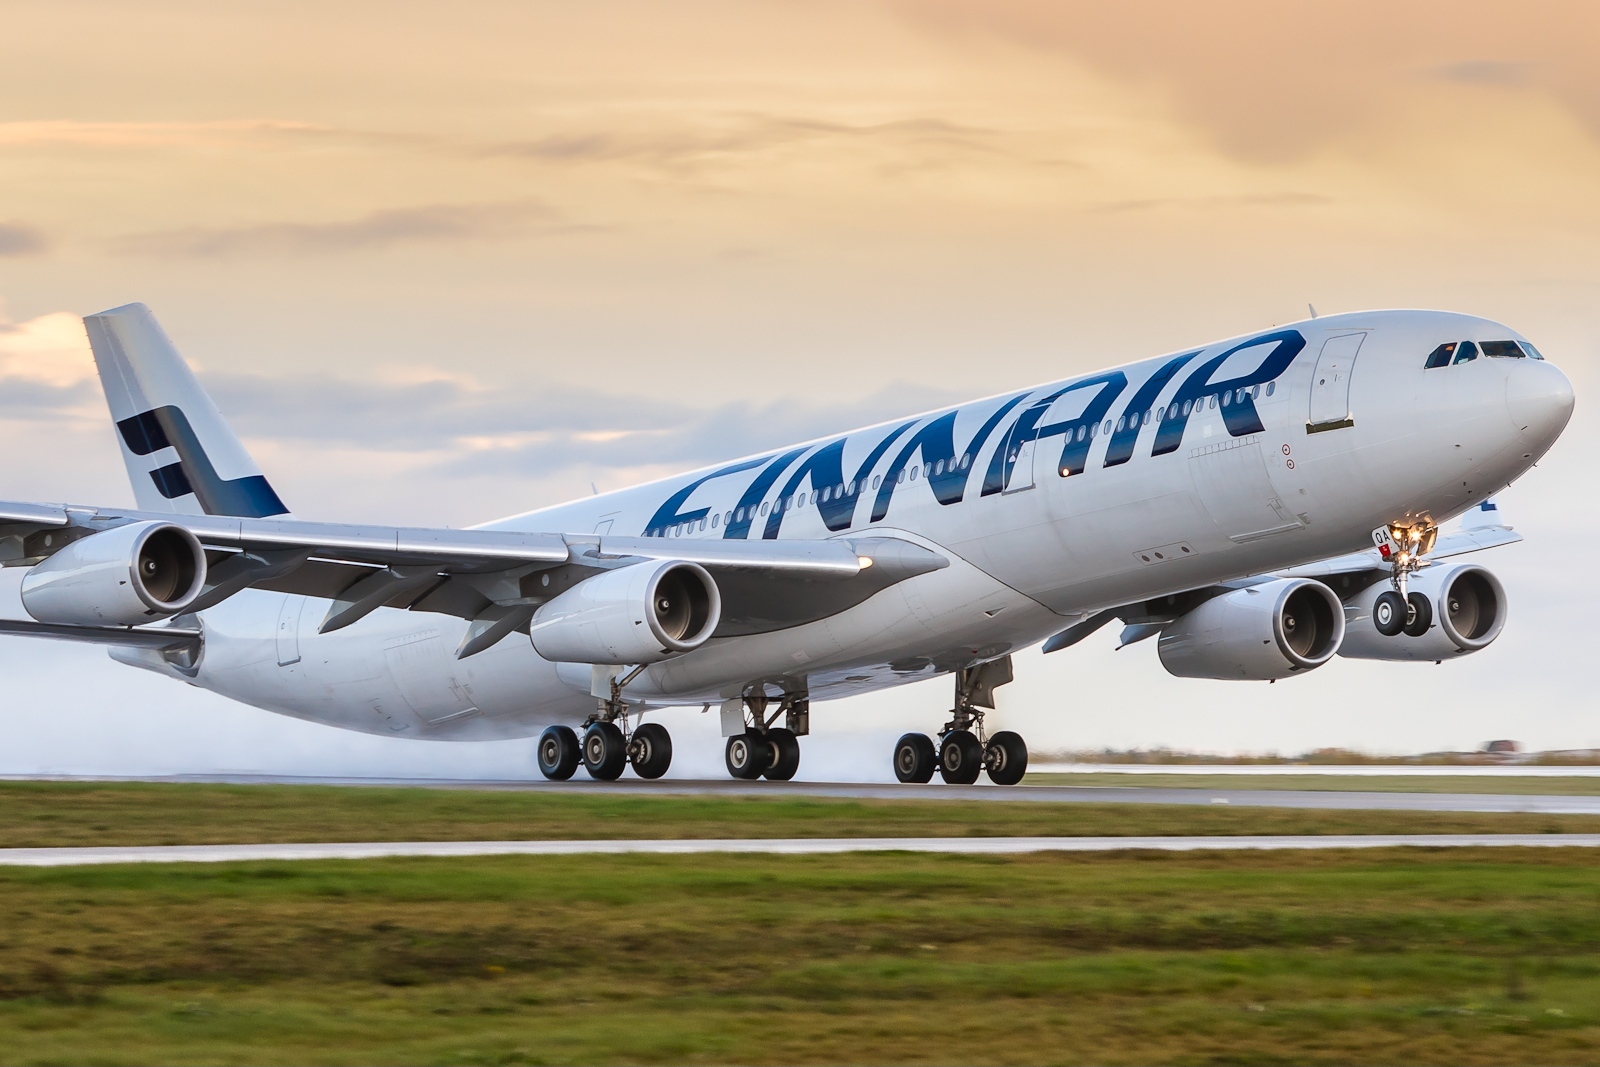 Авиакомпания Finnair выбирает Amadeus Network Revenue Management для повышения прибыльности ...